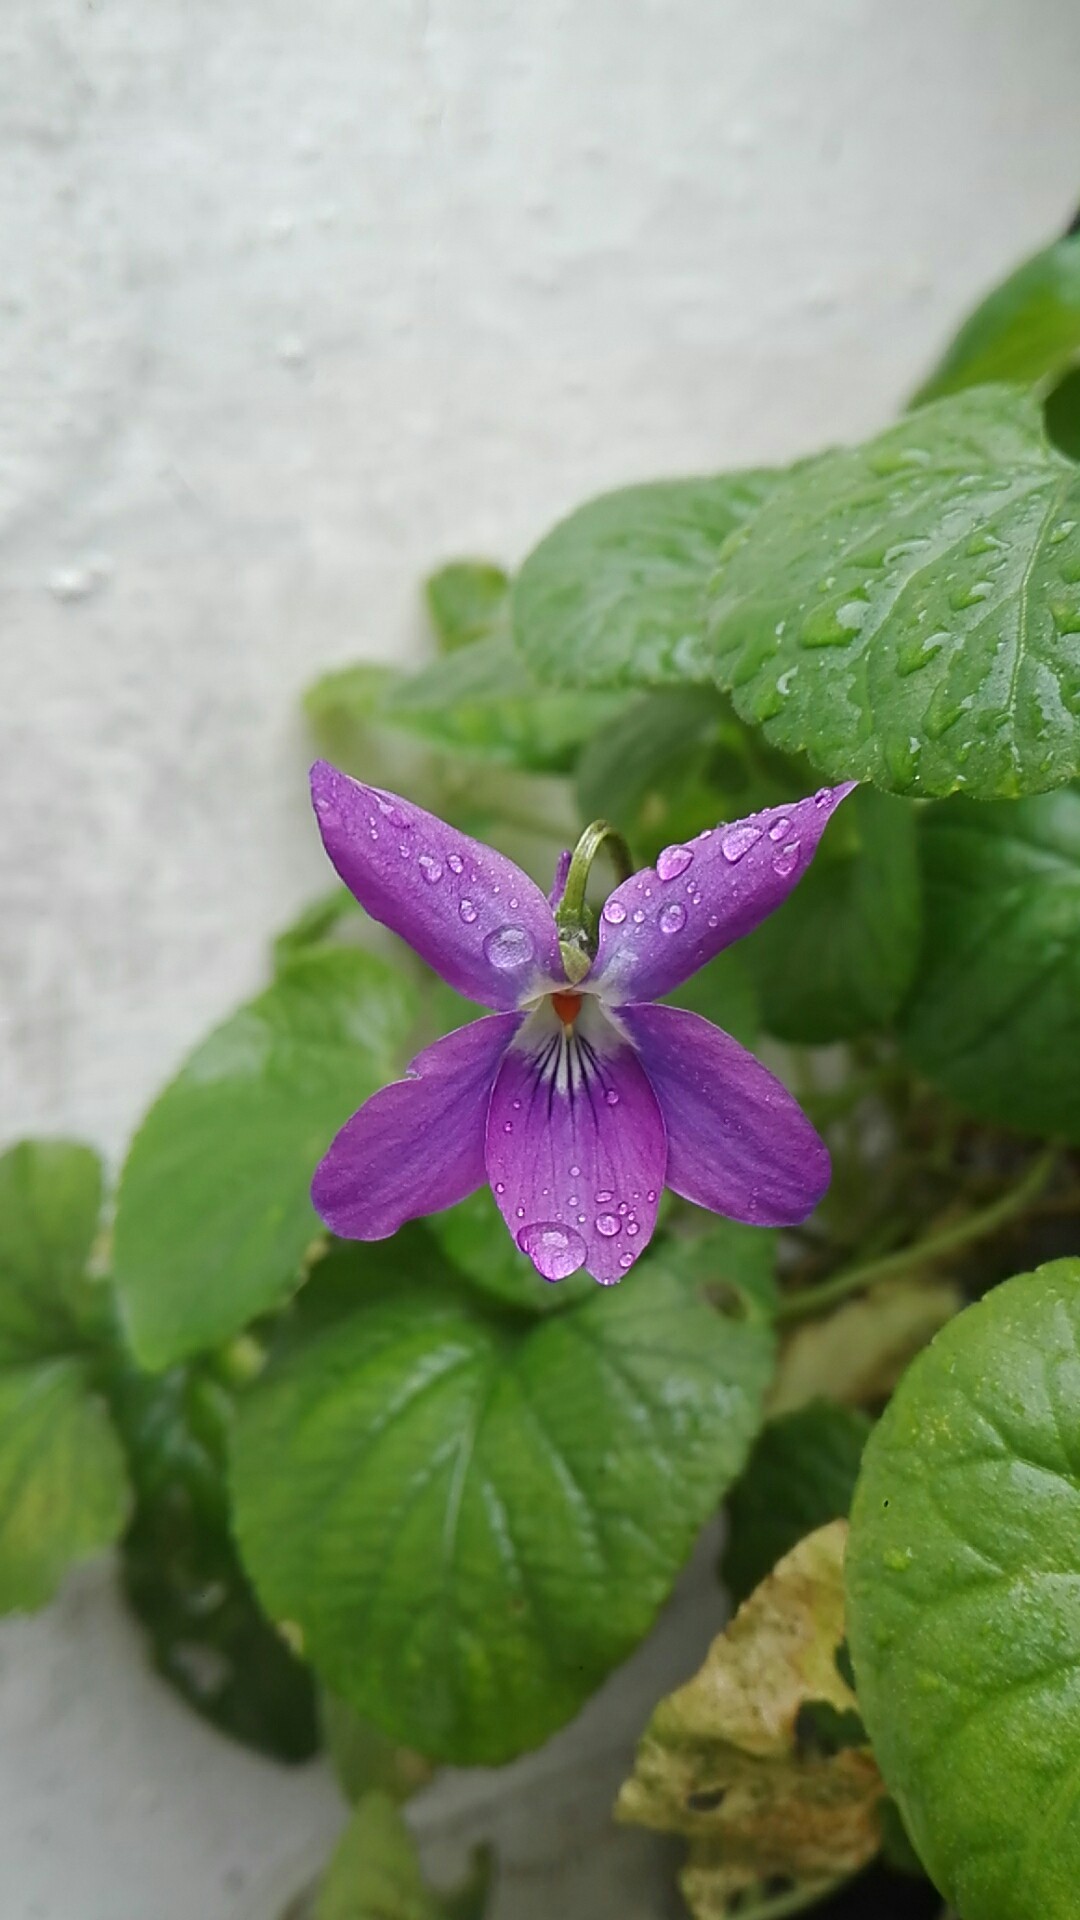 Violette des bois (Viola reichenbachiana) - PictureThis